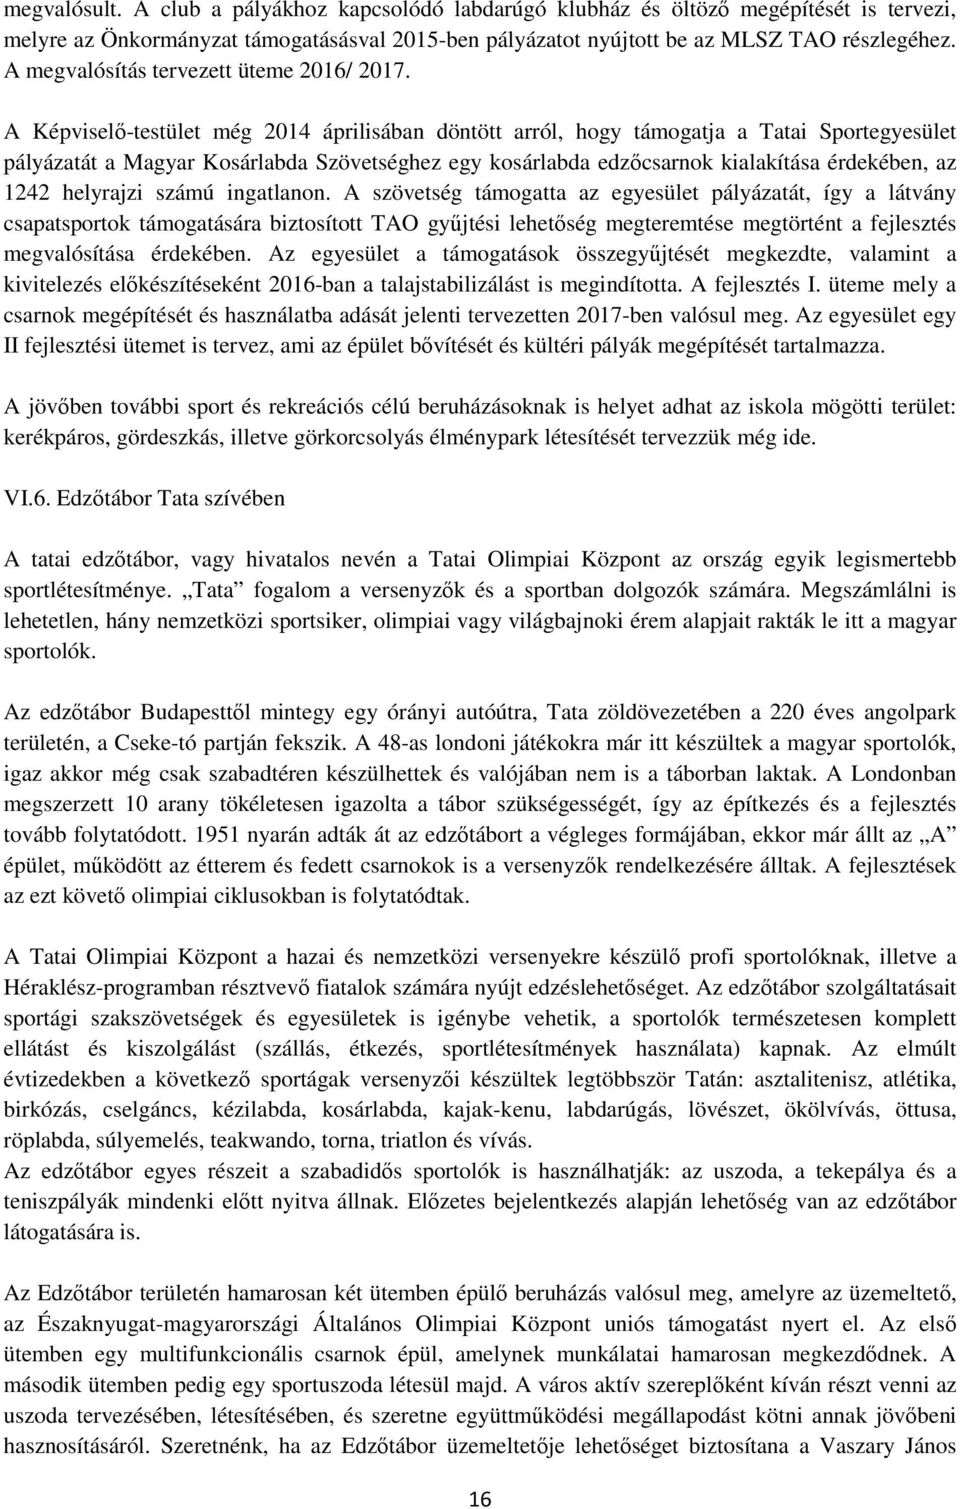 A Képviselő-testület még 2014 áprilisában döntött arról, hogy támogatja a Tatai Sportegyesület pályázatát a Magyar Kosárlabda Szövetséghez egy kosárlabda edzőcsarnok kialakítása érdekében, az 1242